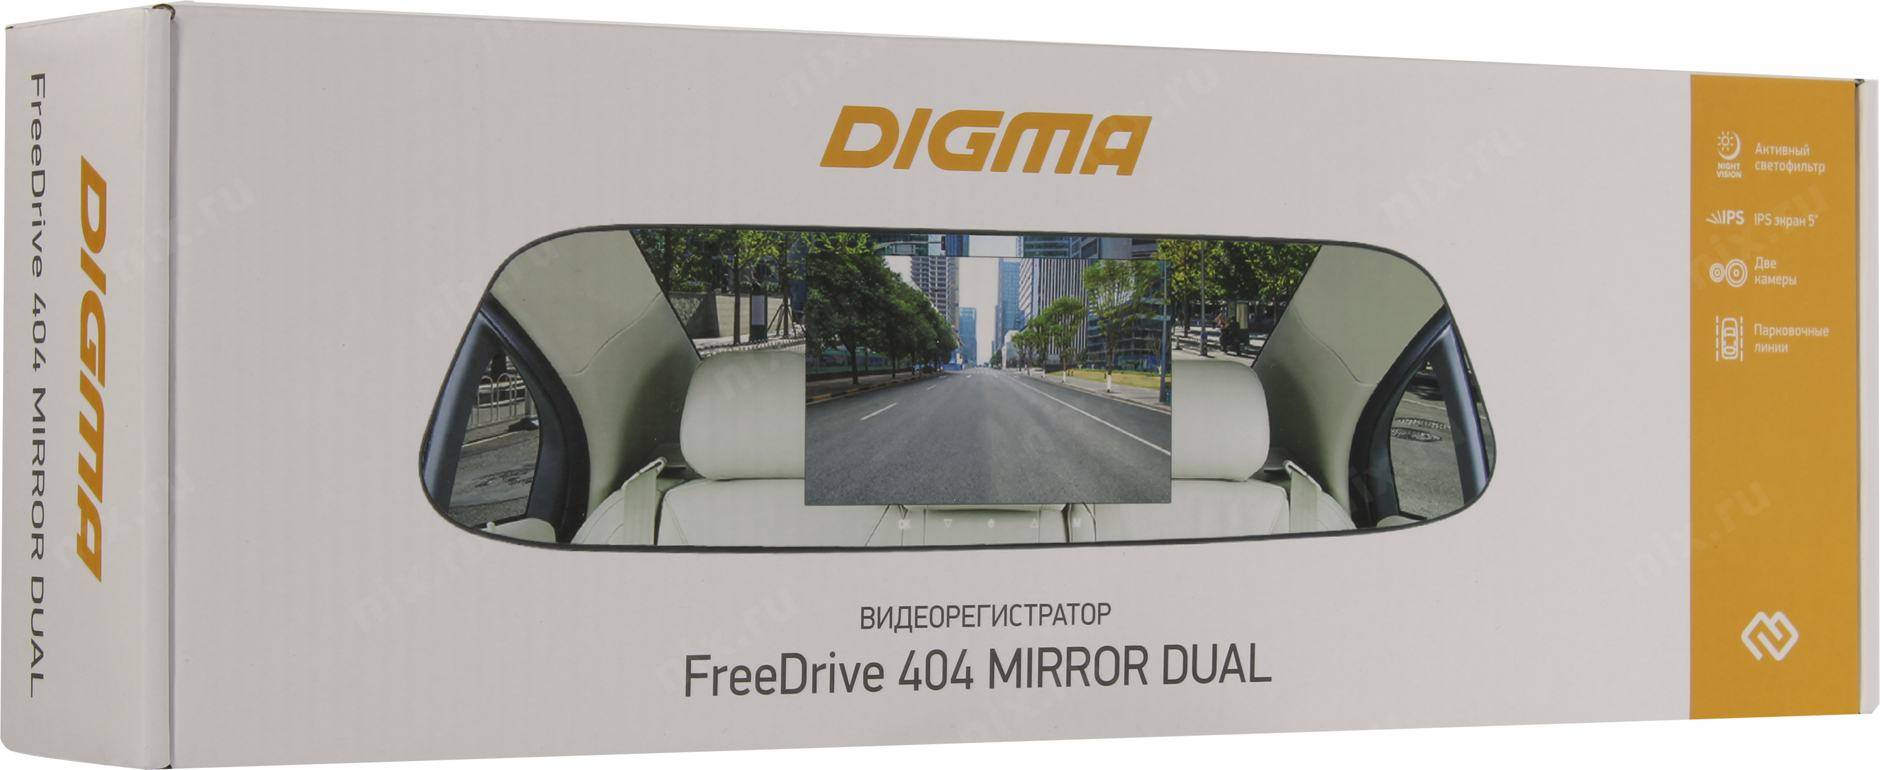 Отзывы на видеорегистратор Digma Freedrive 404 Mirror Dual